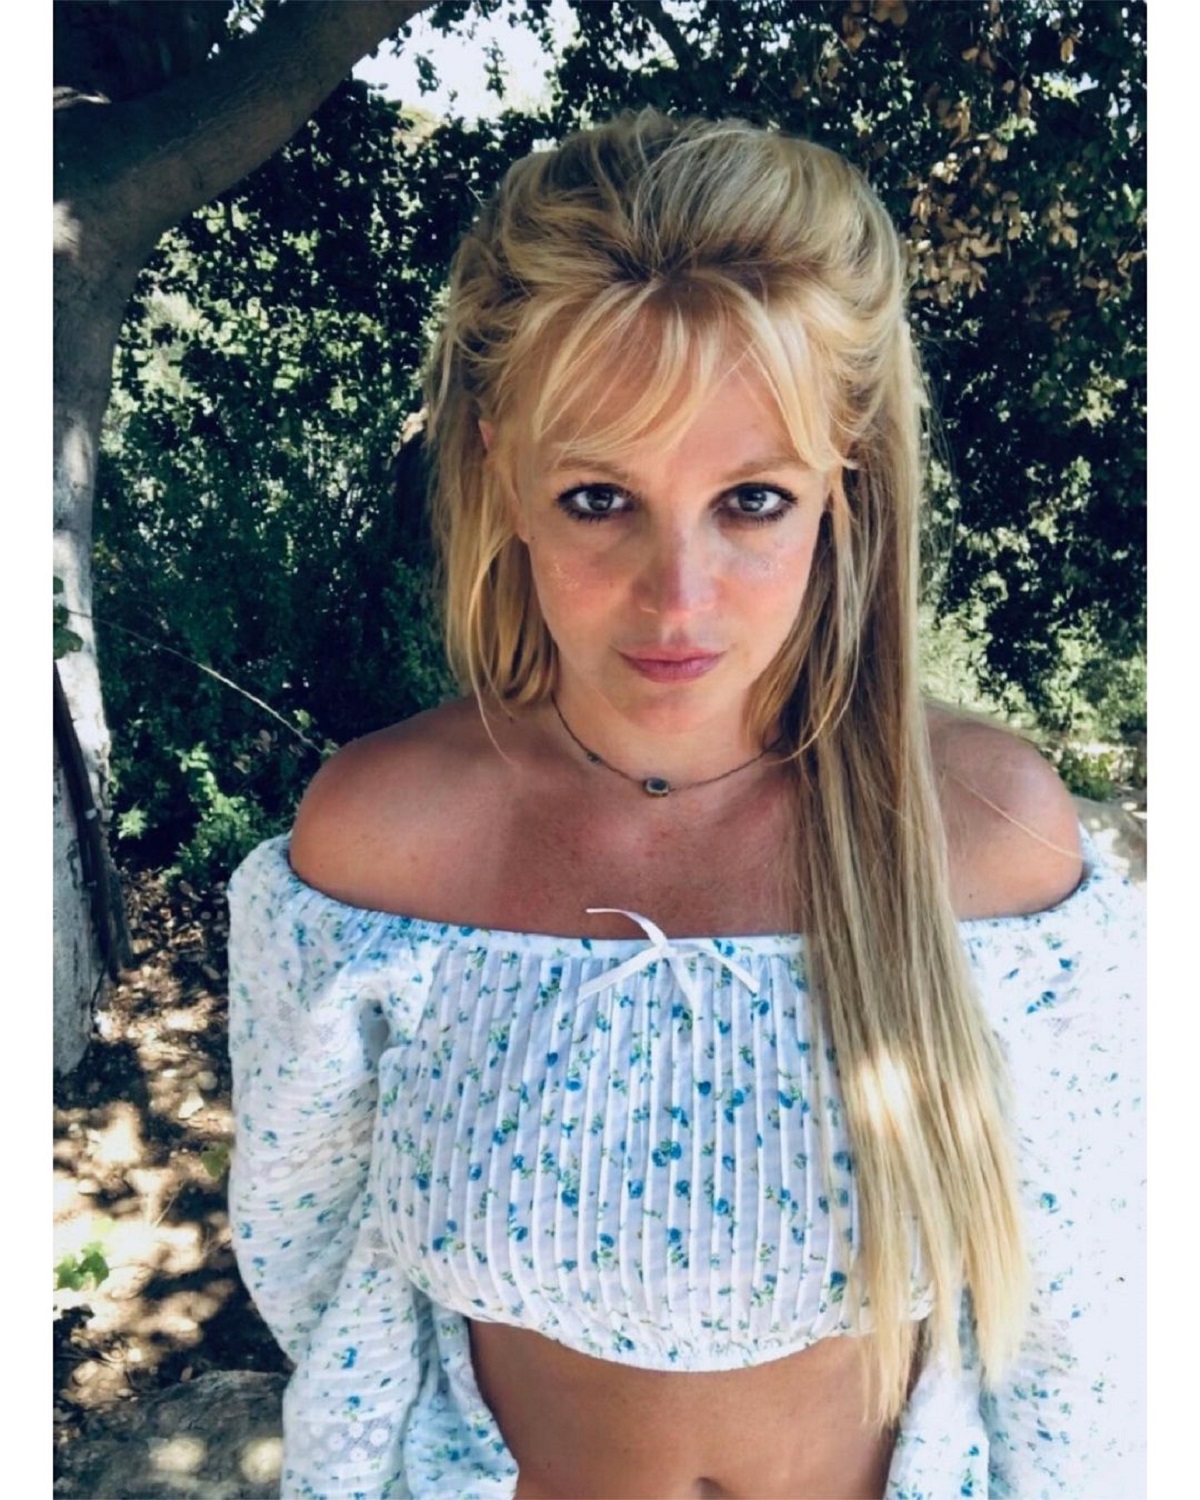 “Invité a mis chicos favoritos”: Britney Spears celebró su divorcio con alocada fiesta